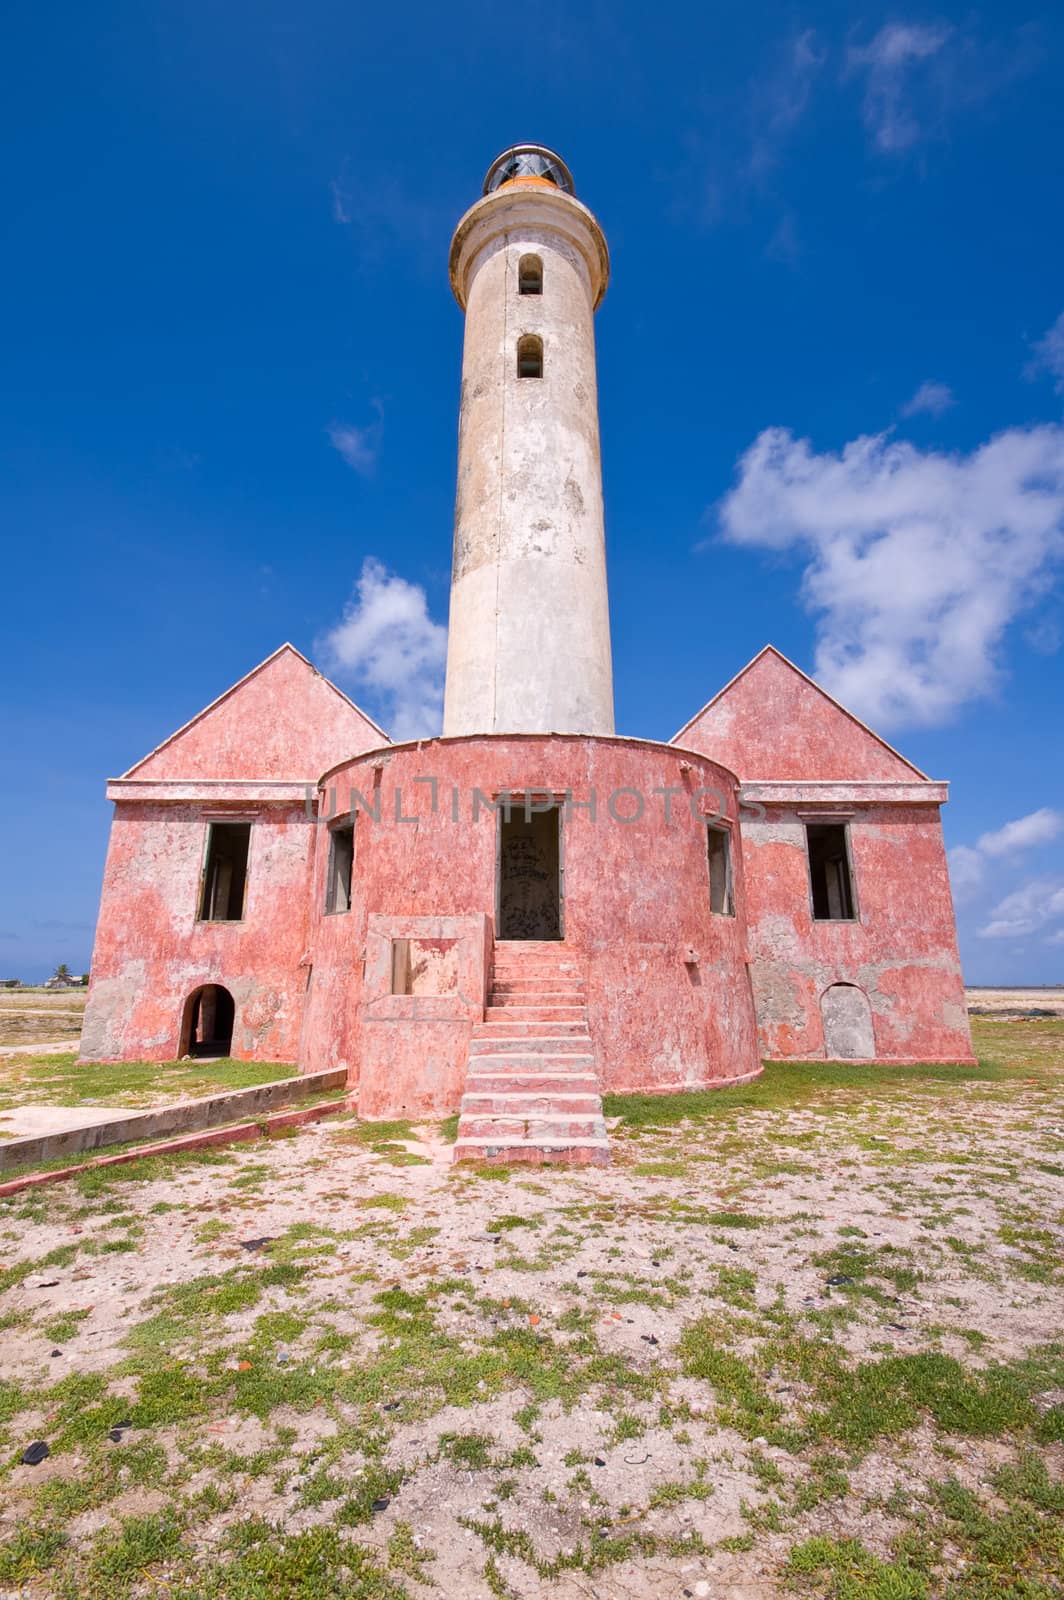 ancient lighthouse ruin on little curacao against blue cloudy sky